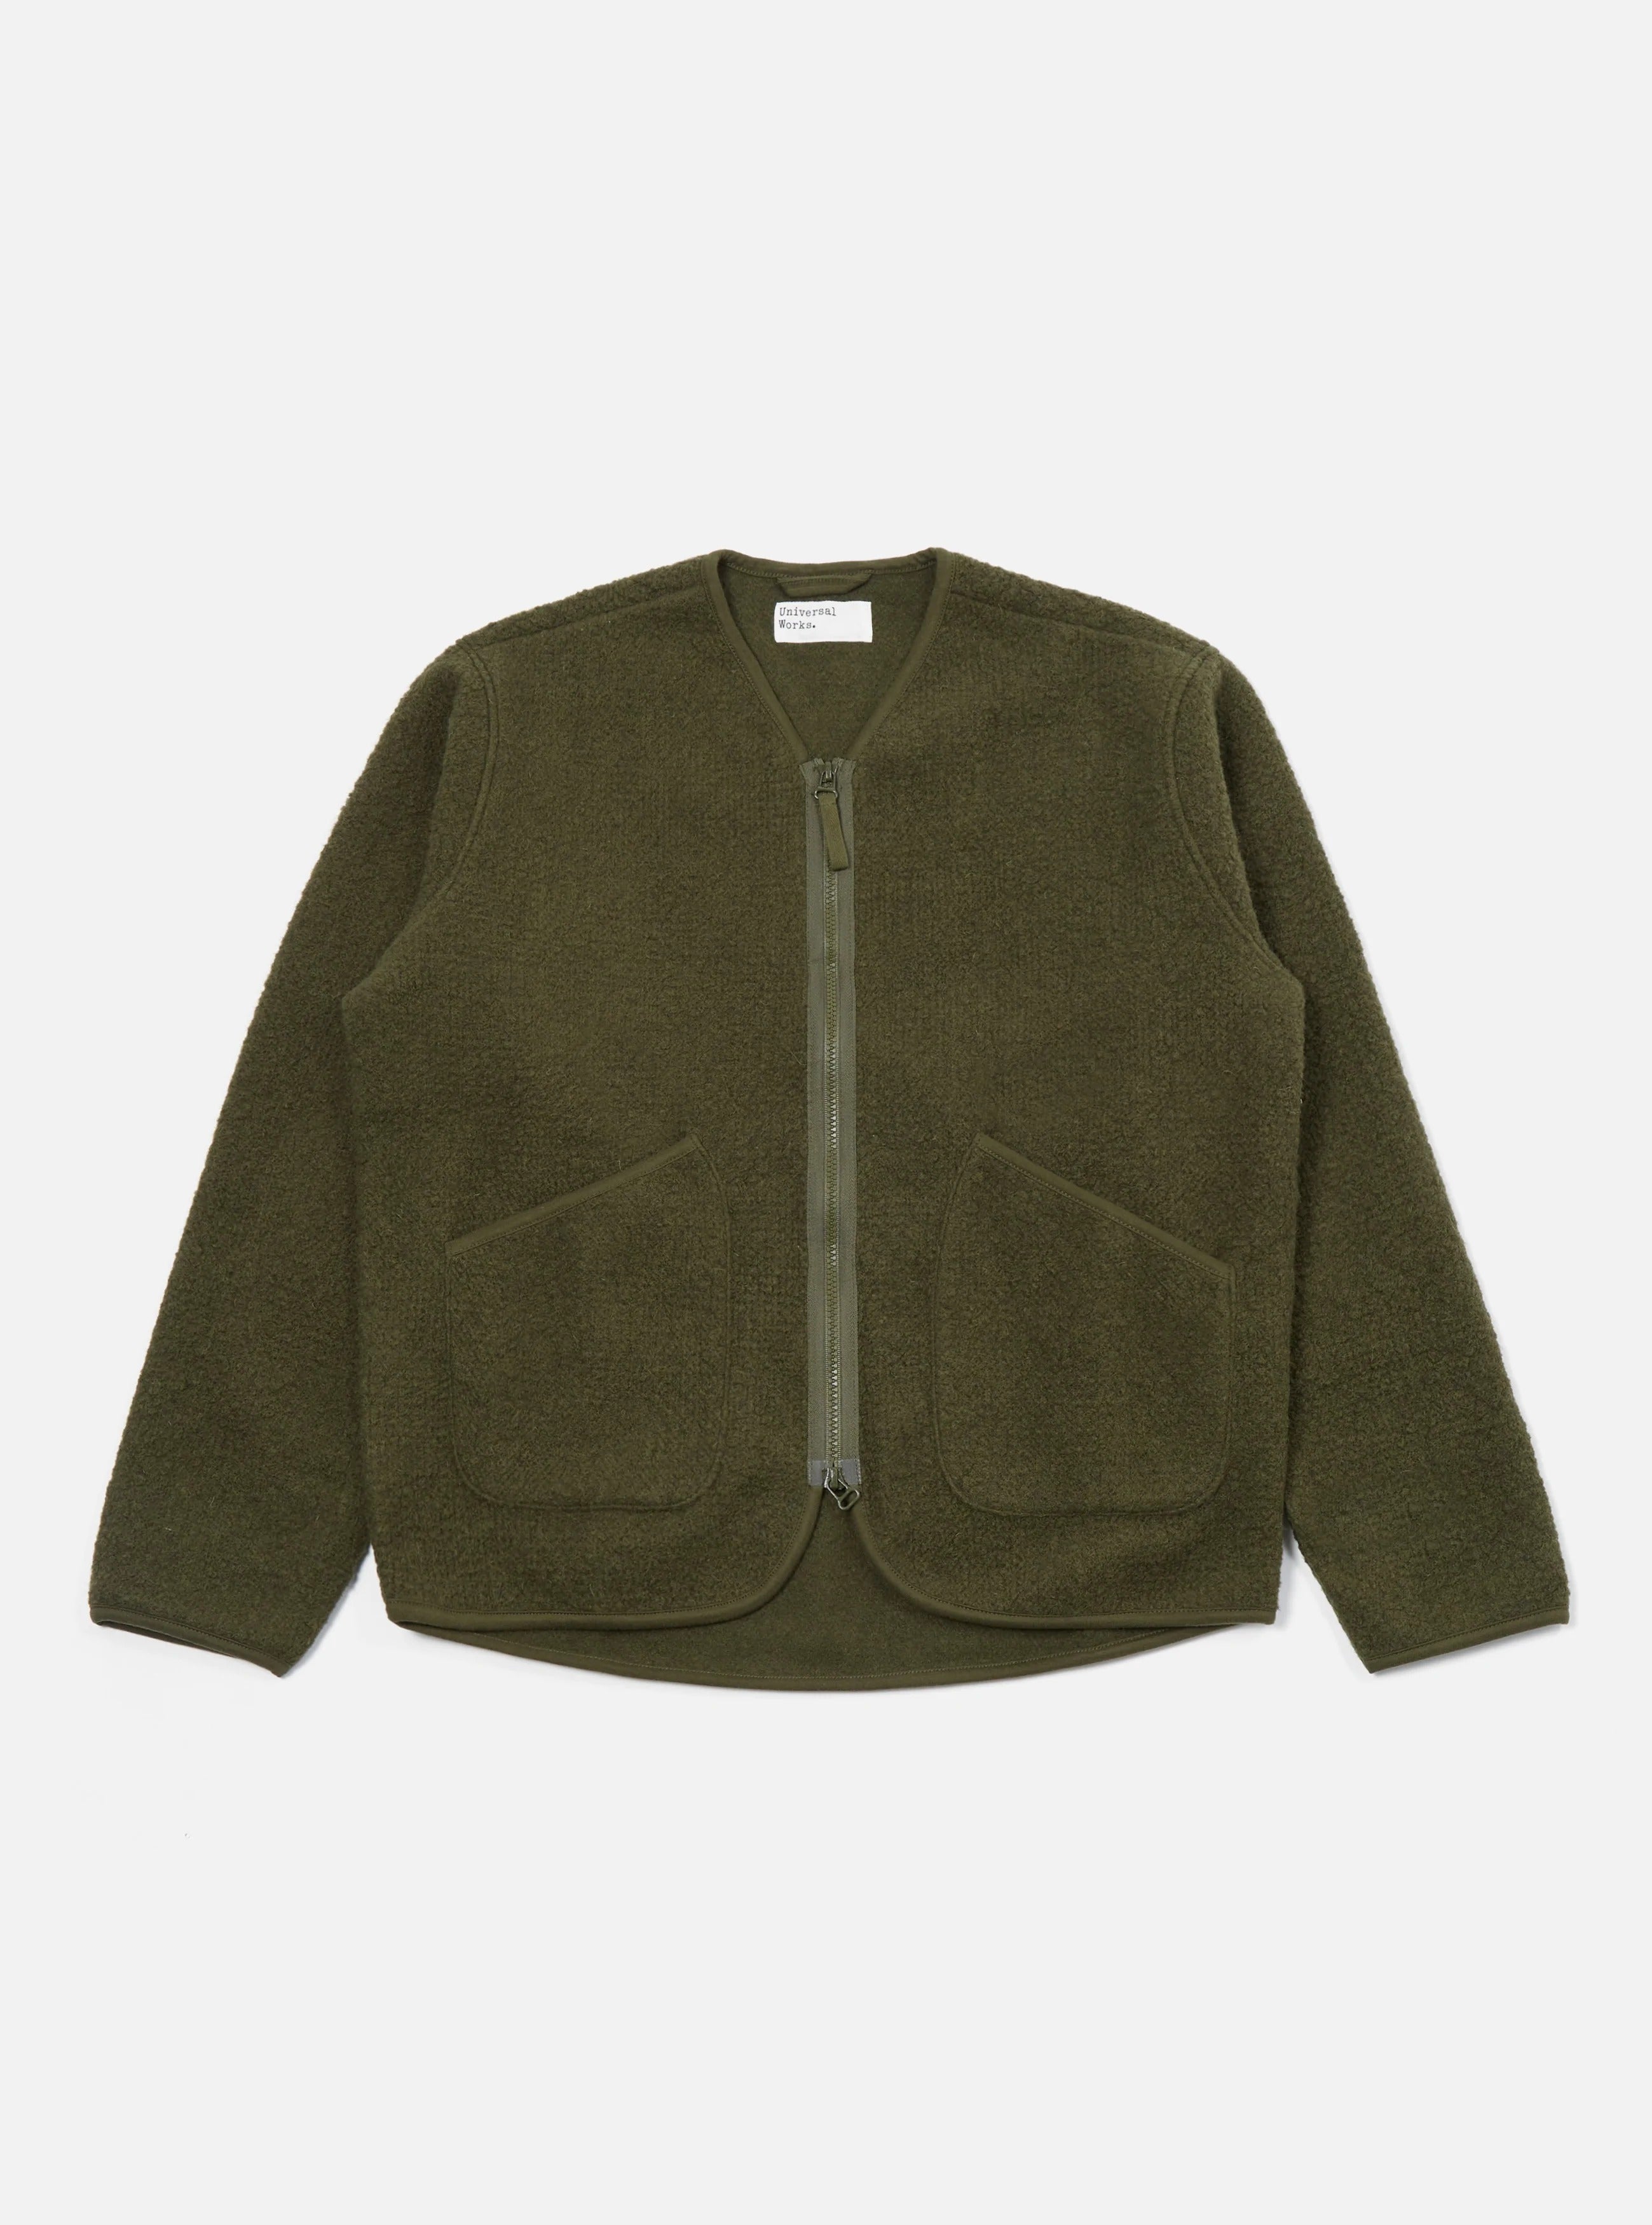 【Universal Works】Zip Liner Jacket In Olive Tibet Fleece